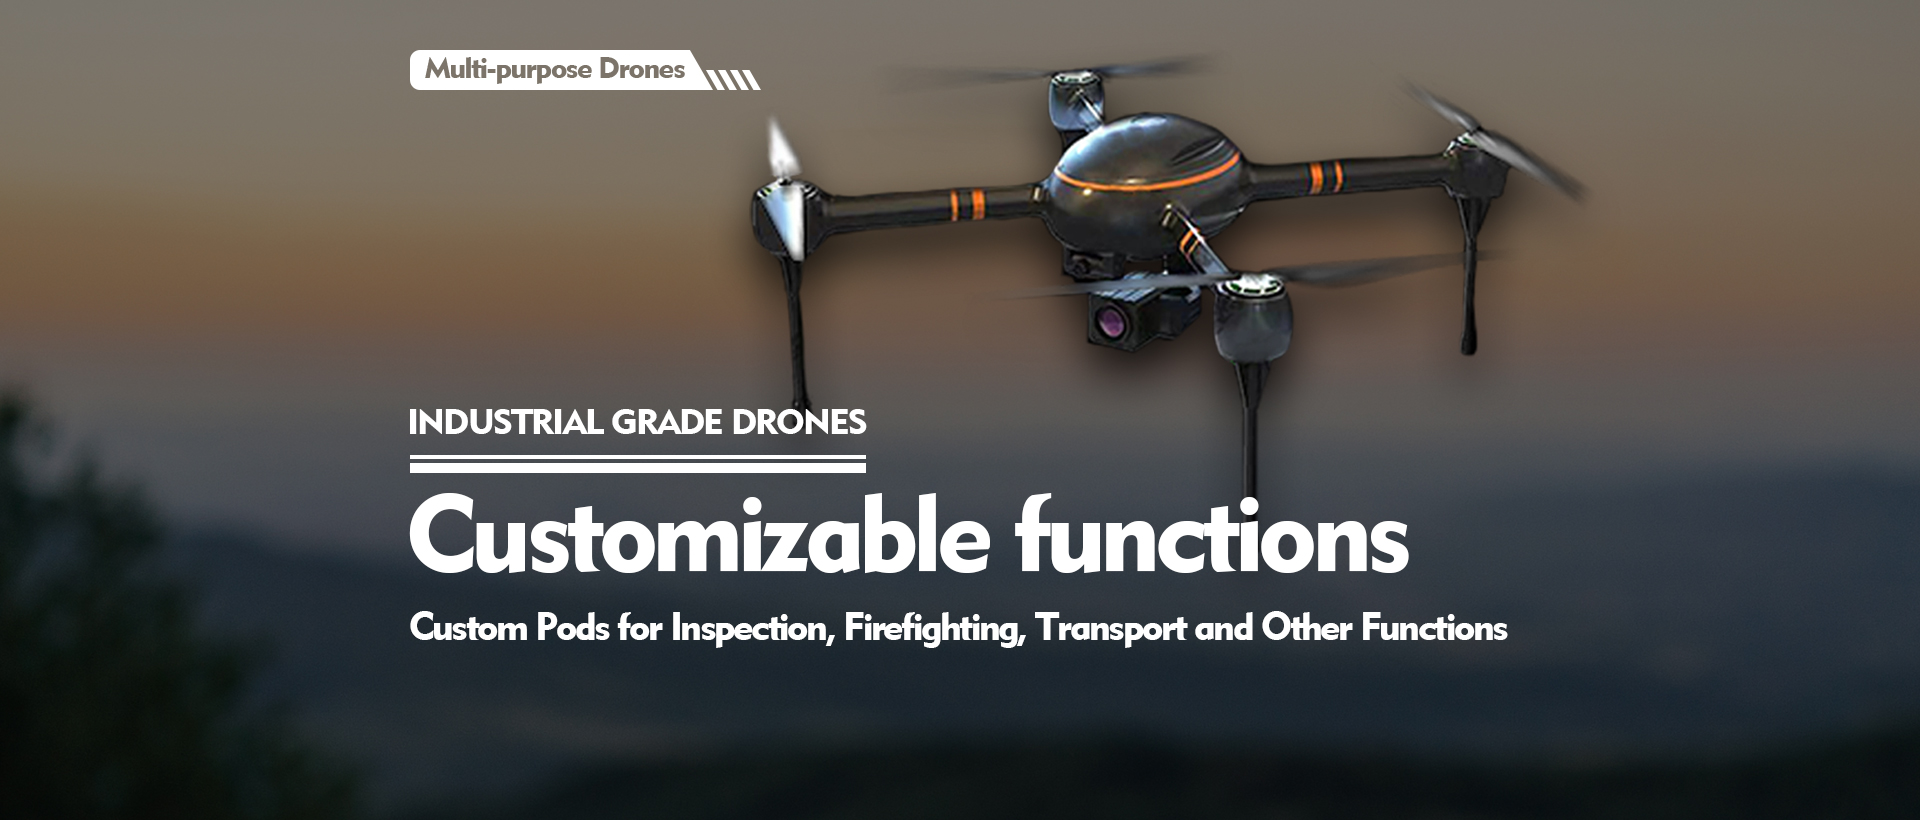 Industrial grade drones